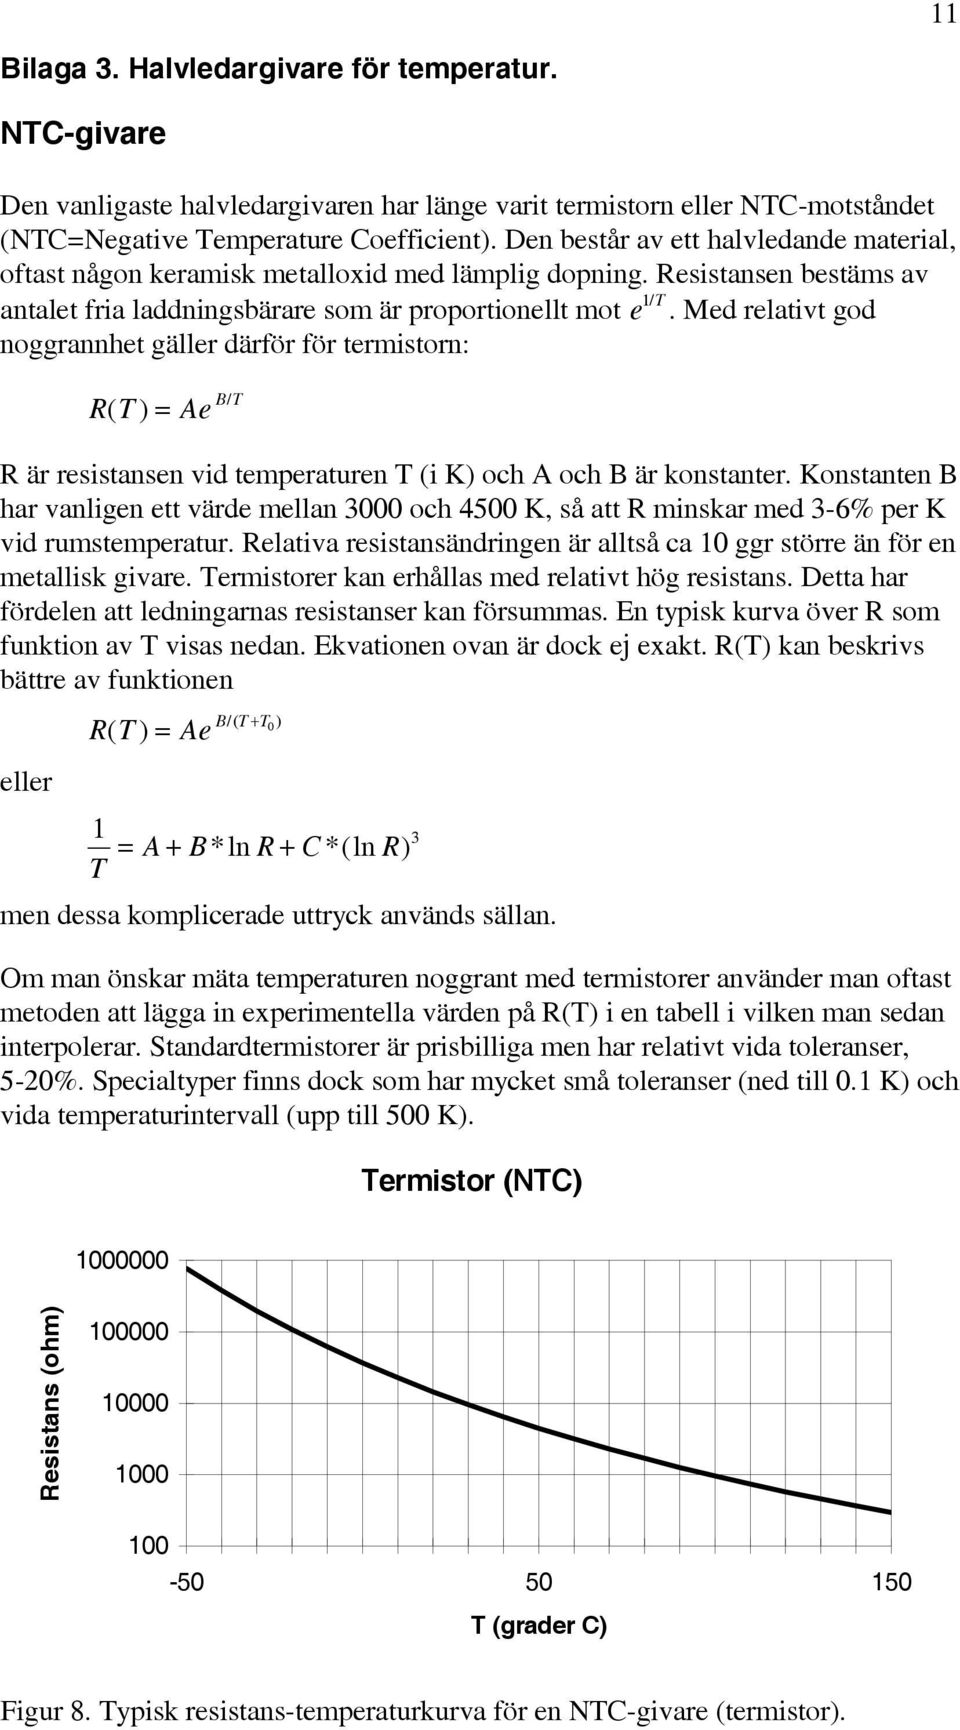 Med elativt god noggannhet gälle däfö fö temiston: T ( ) Ae BT / ä esistansen vid tempeatuen T (i K) och A och B ä konstante.